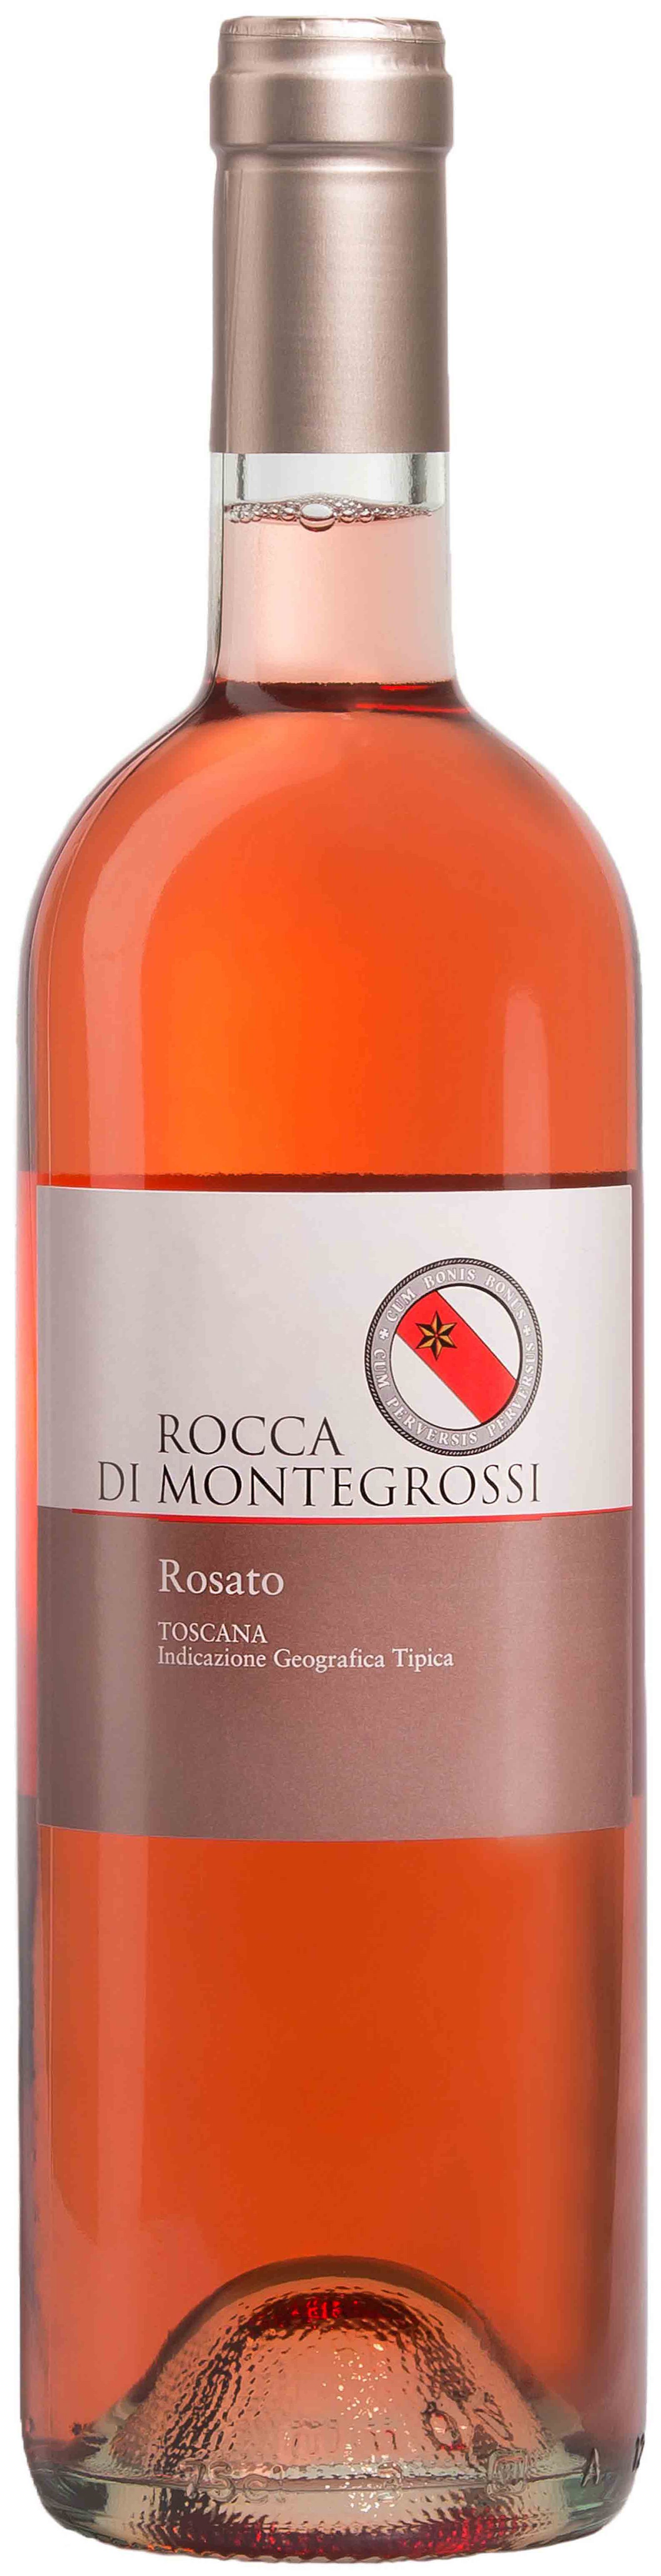 Rocca Di Montegrossi, Rosato, 2016